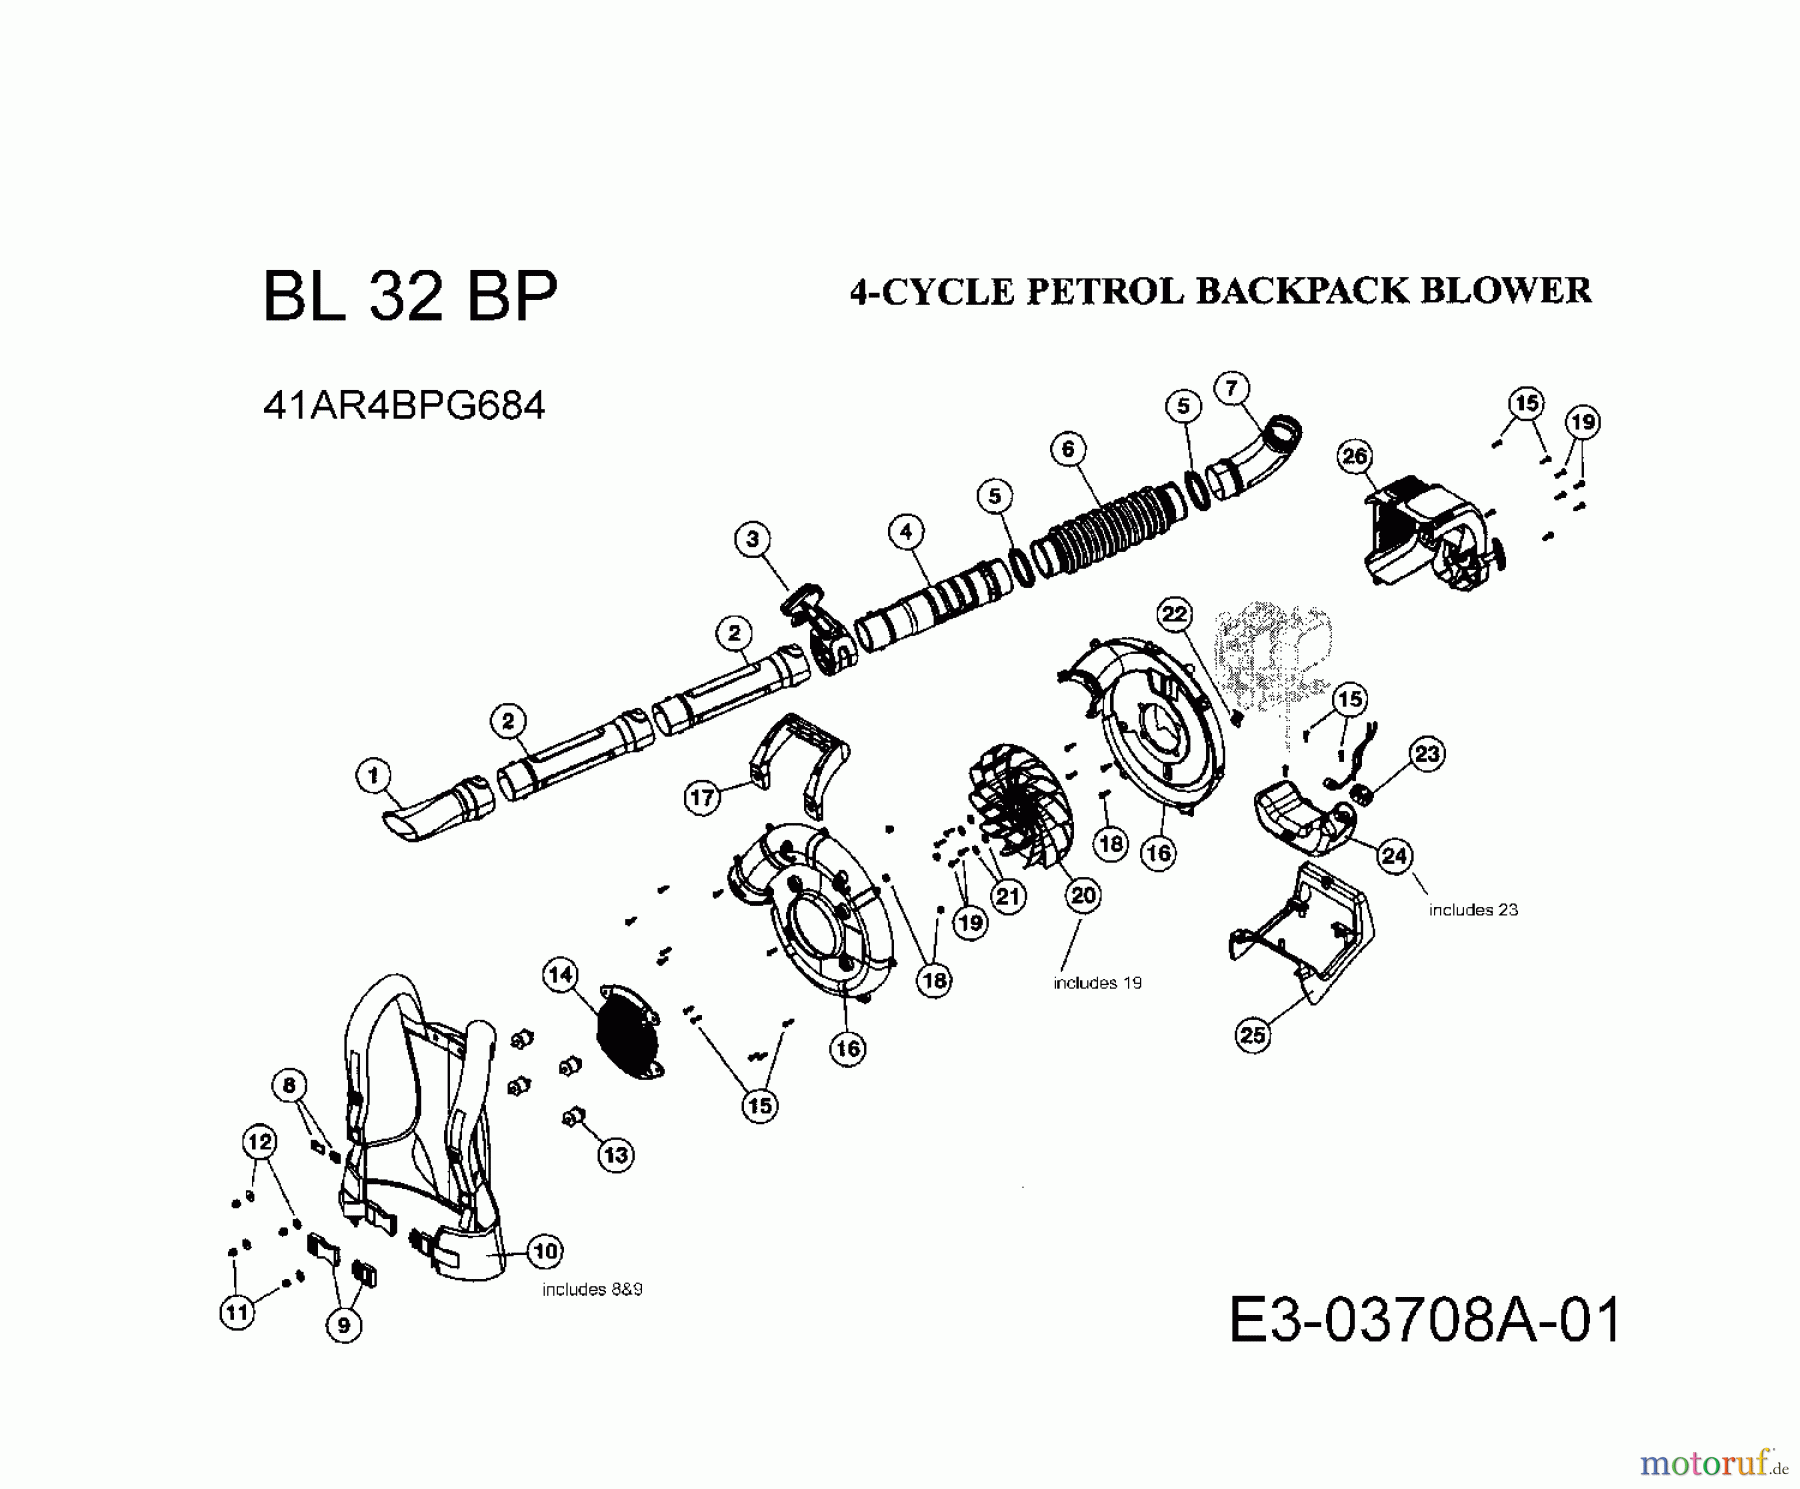  Bolens Leaf blower, Blower vac BL 32 BP 41AR4BPG684  (2008) Basic machine